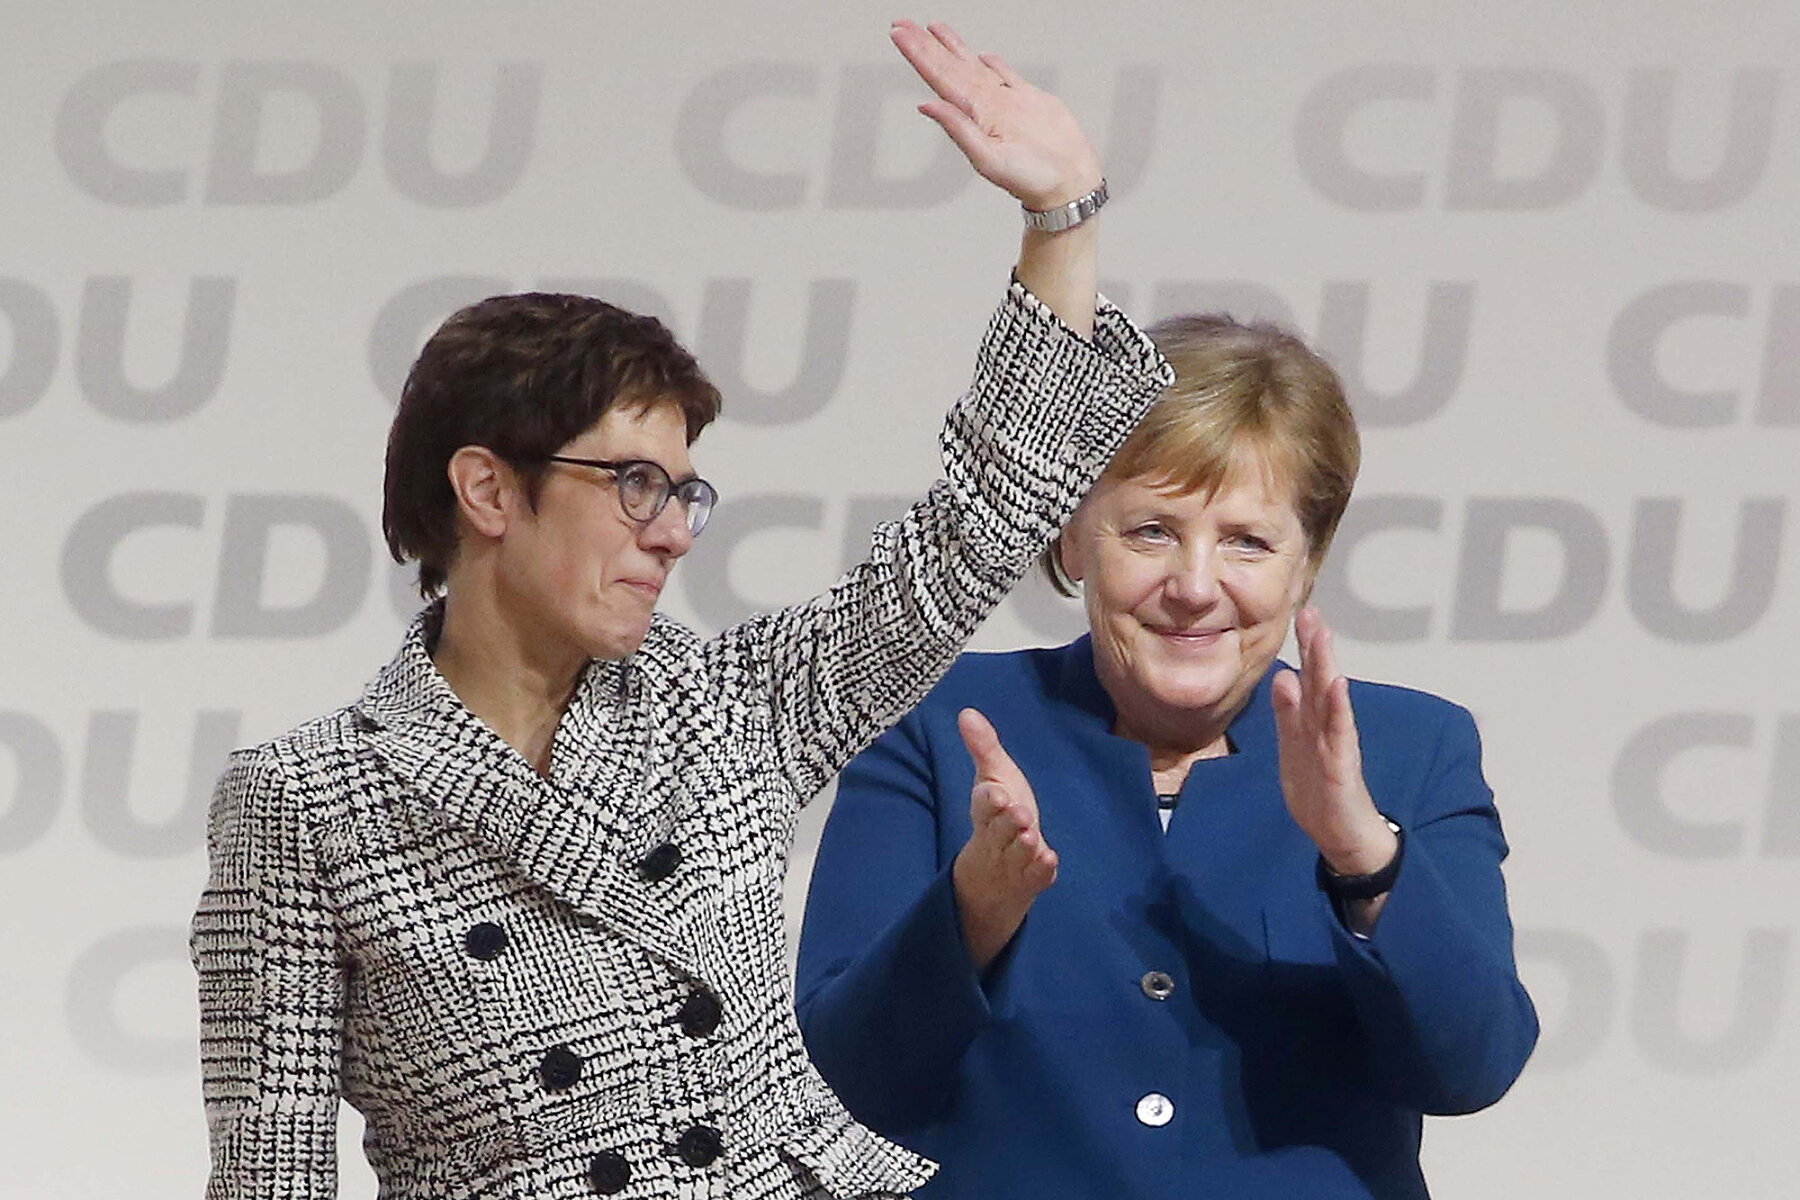 <p>Меркель поздравляет с победой свою протеже Аннегрет Крамп-Карренбауэр, которой канцлер уступила пост председателя ХДС, Гамбург, 7 декабря 2018 года</p>

<p>Крамп-Карренбауэр должна была стать преемницей Меркель и на посту федерального канцлера на выборах 2021 года, но в 2020 году объявила о собственной&nbsp;отставке из-за внутрипартийного кризиса.</p>